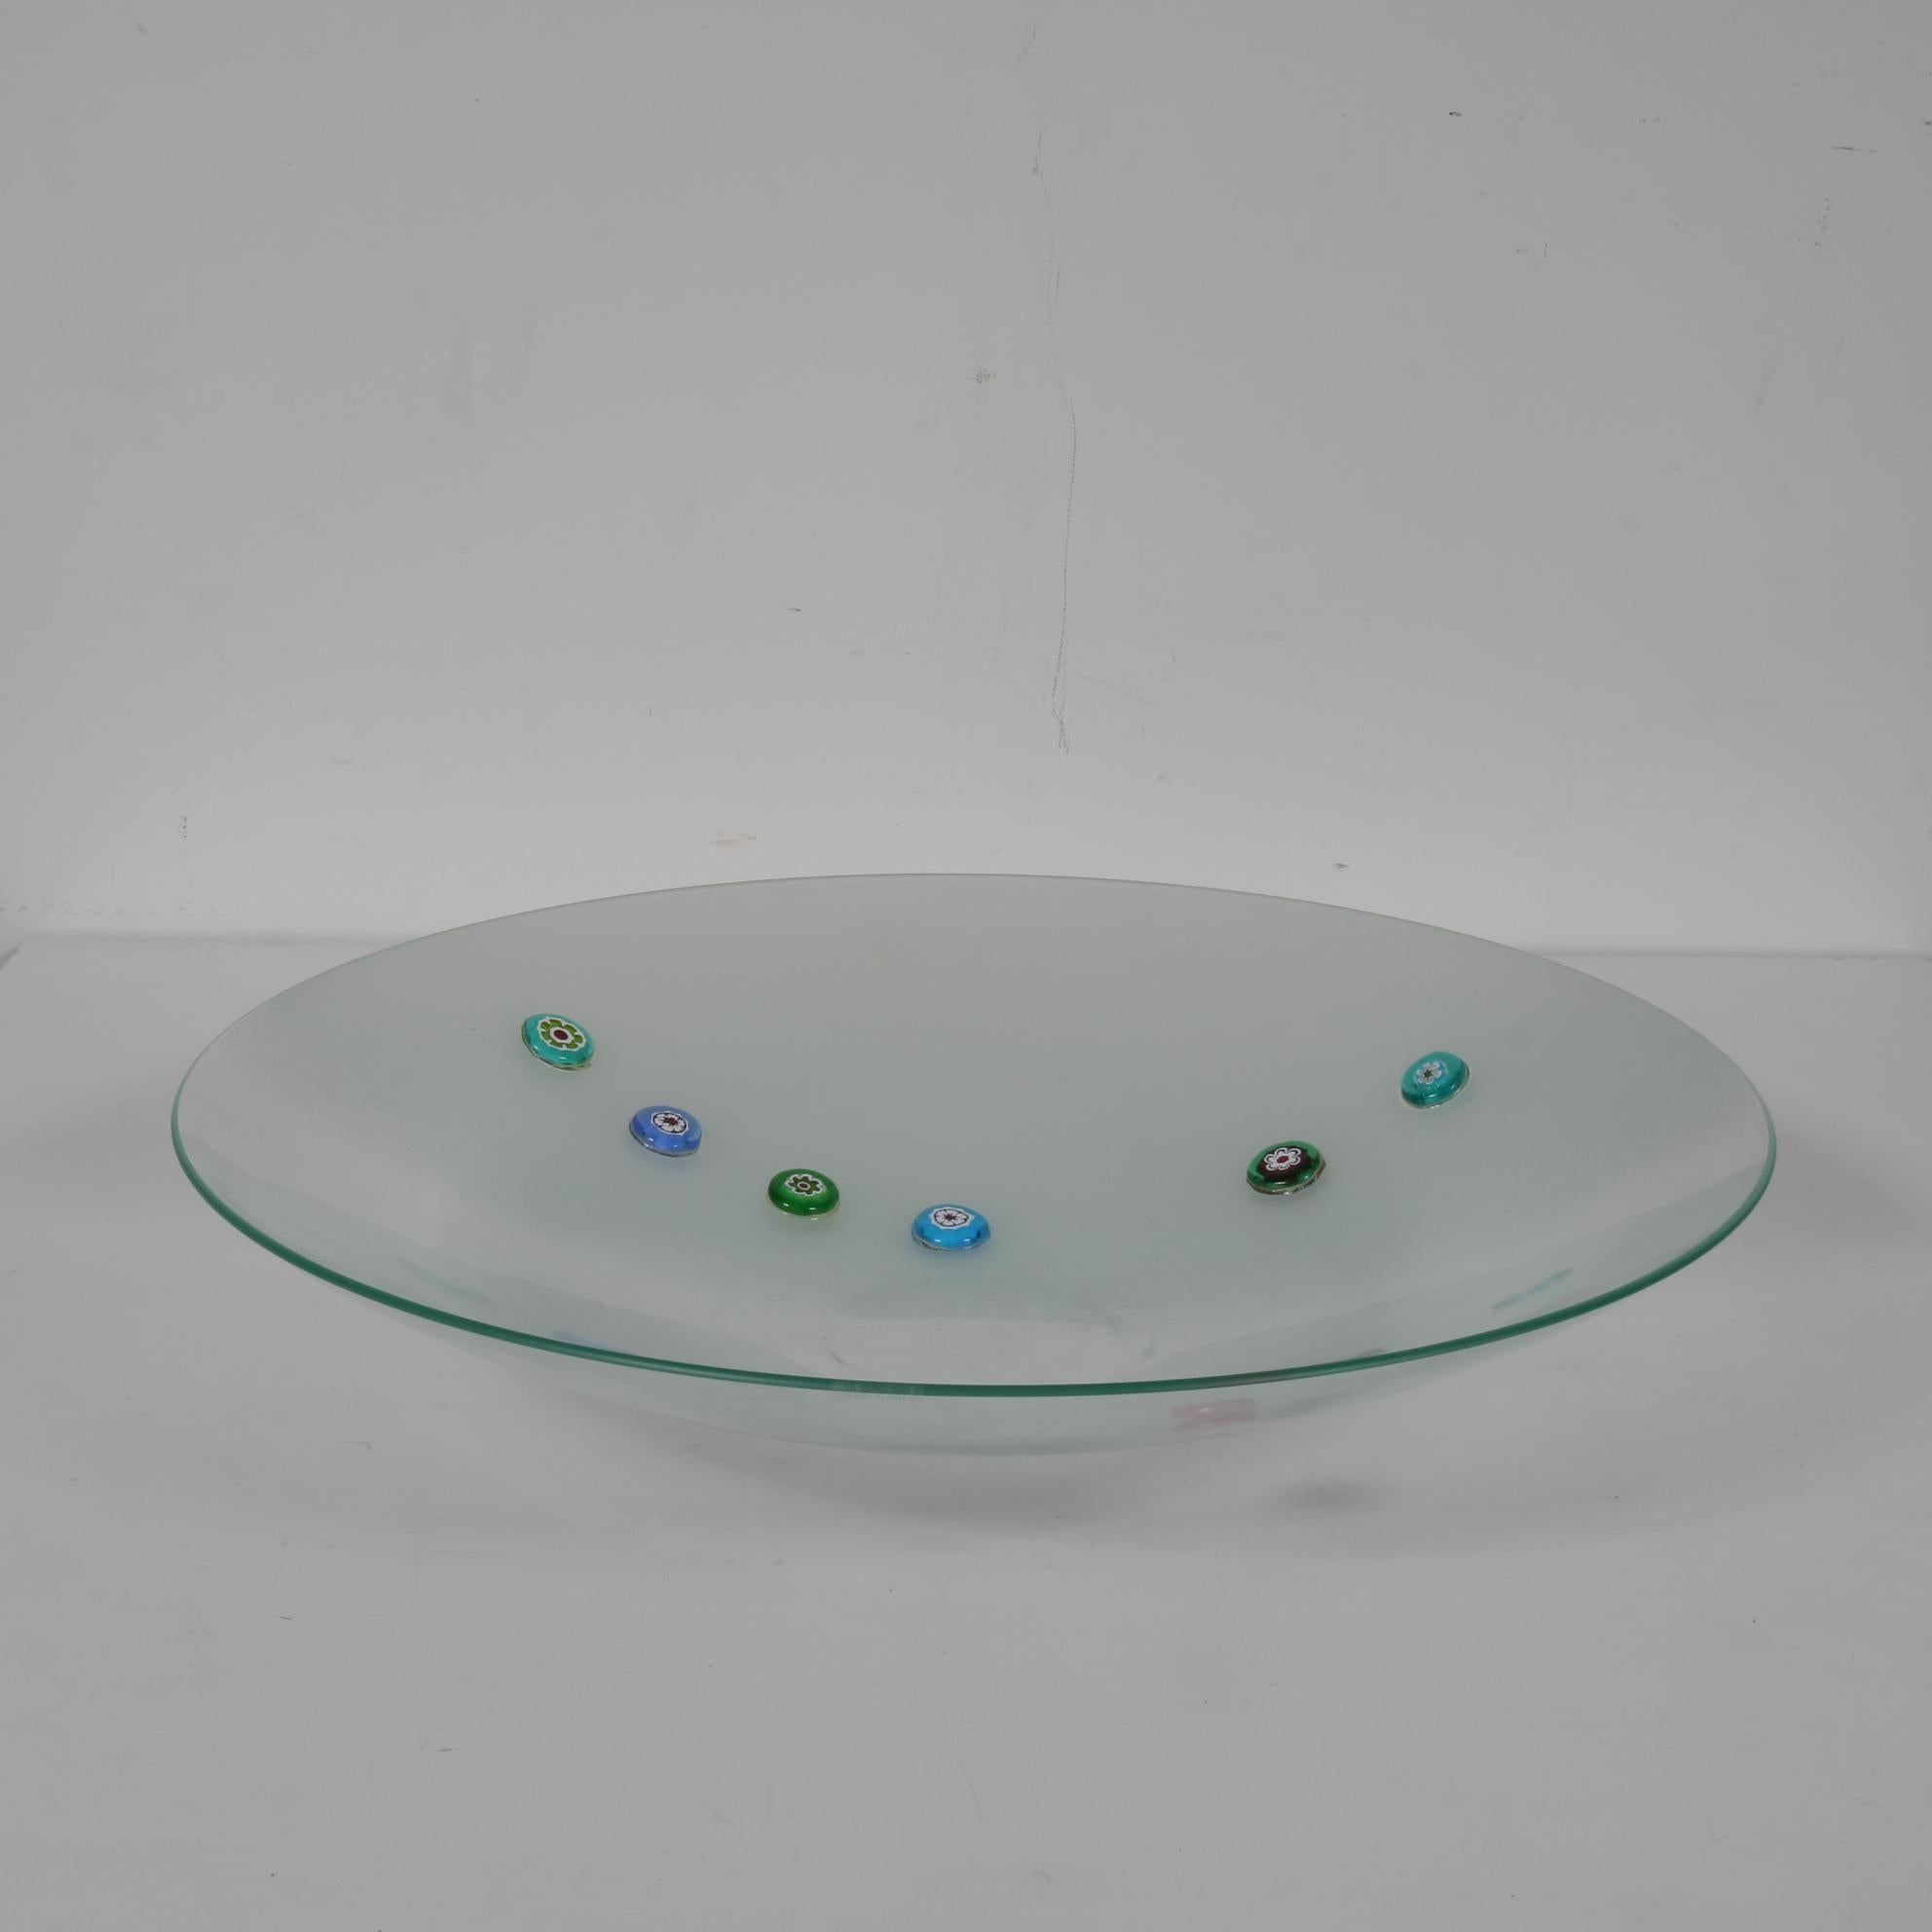 Rare Bruno Munari Glass Plate from 